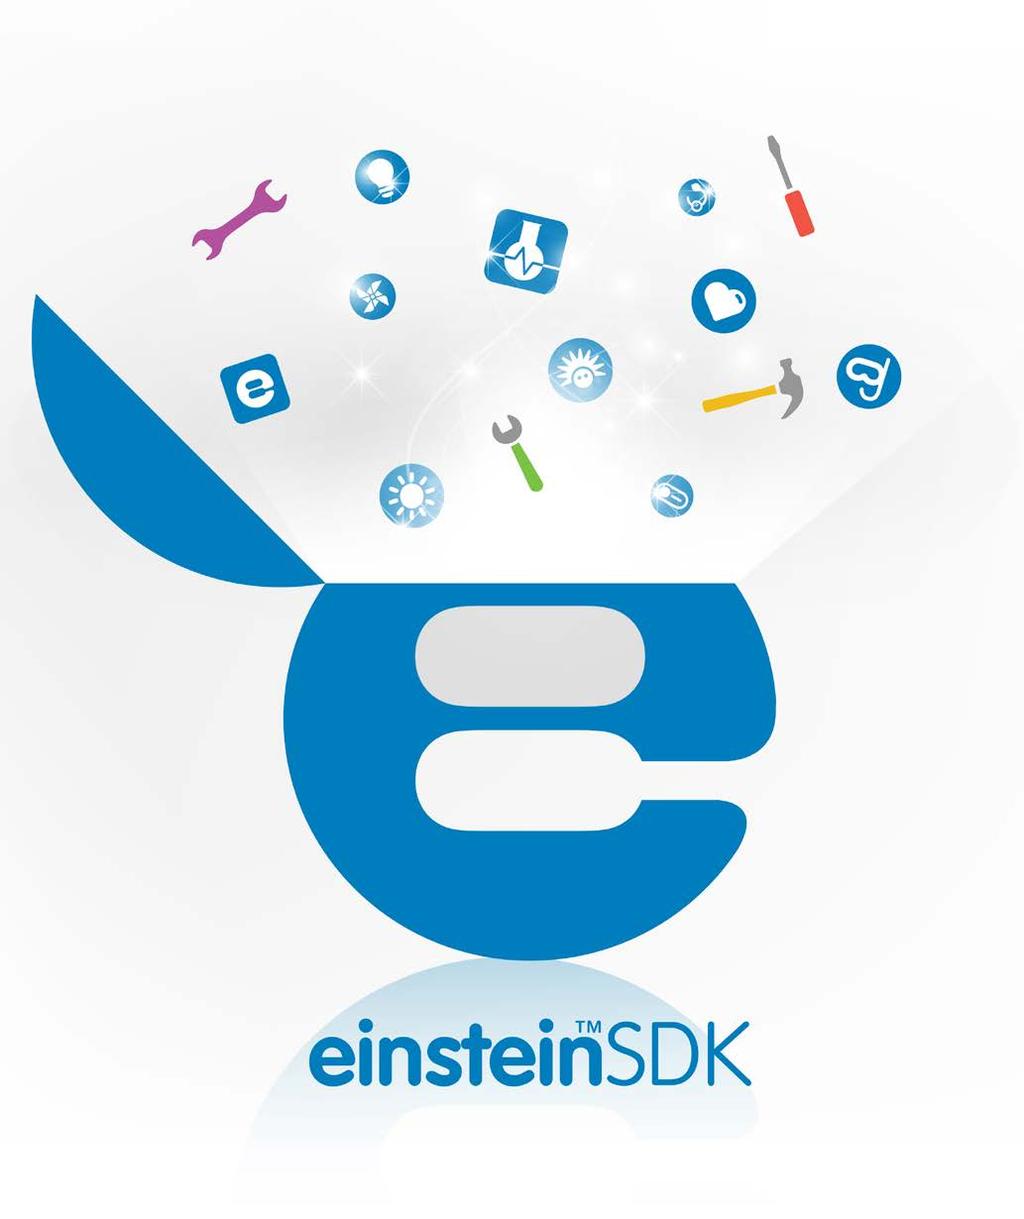 einstein Software Development Kit (SDK) Platforma einstein je nyní otevřená vývojářům z celého světa, kteří mohou sami vytvářet aplikace, speciálně vyvinuté pro měřící rozhraní einstein a některé ze